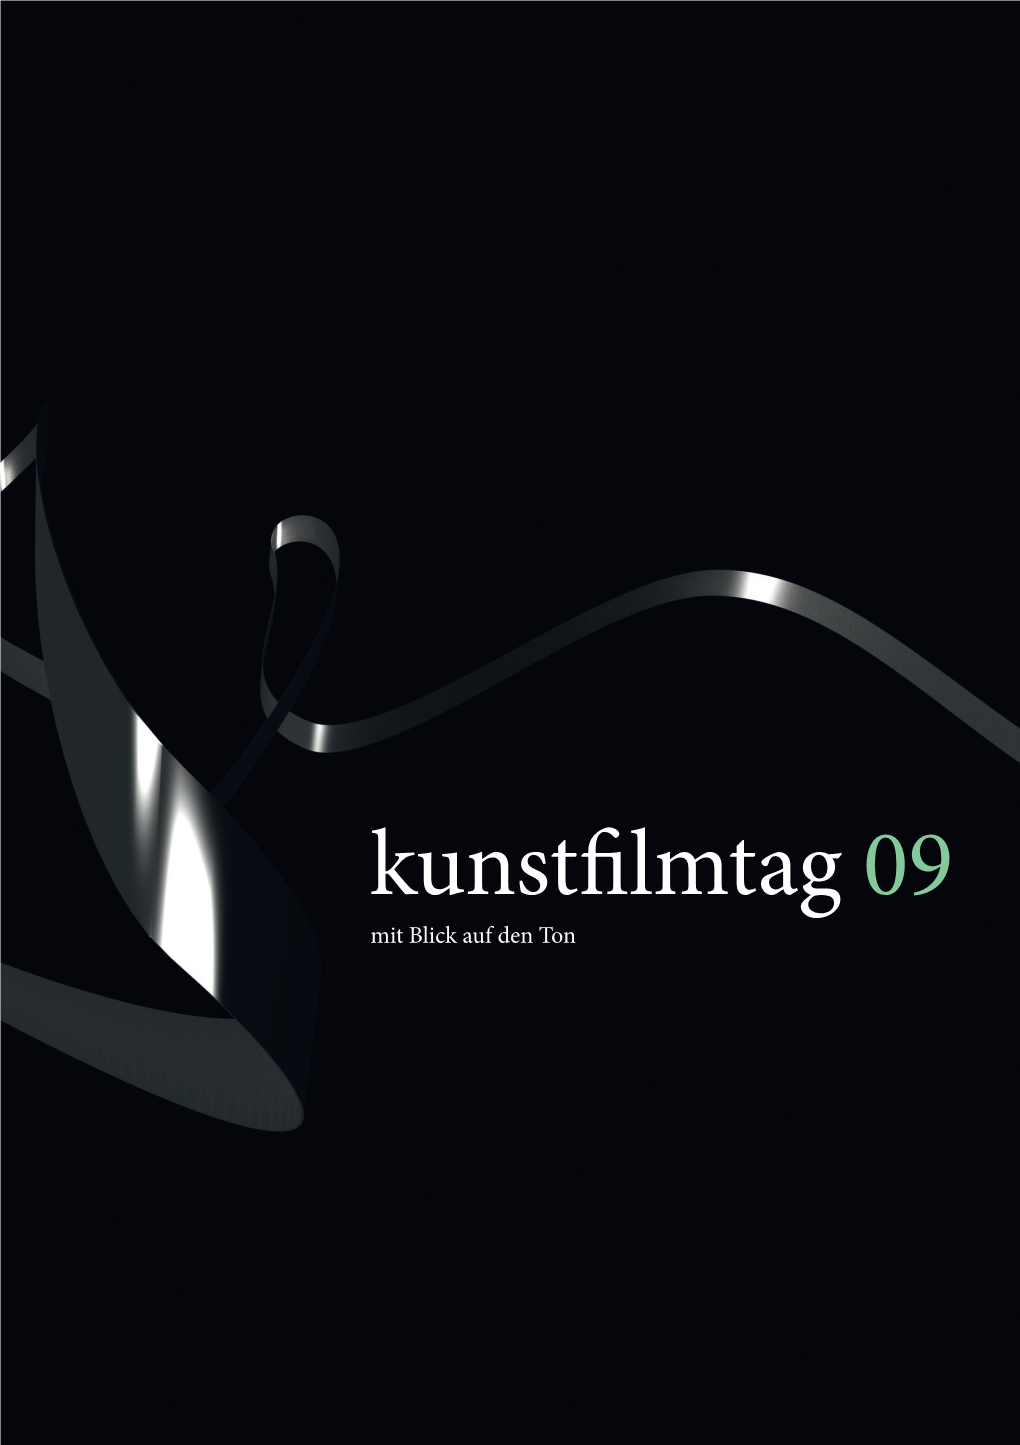 Kunstfilmtag 09